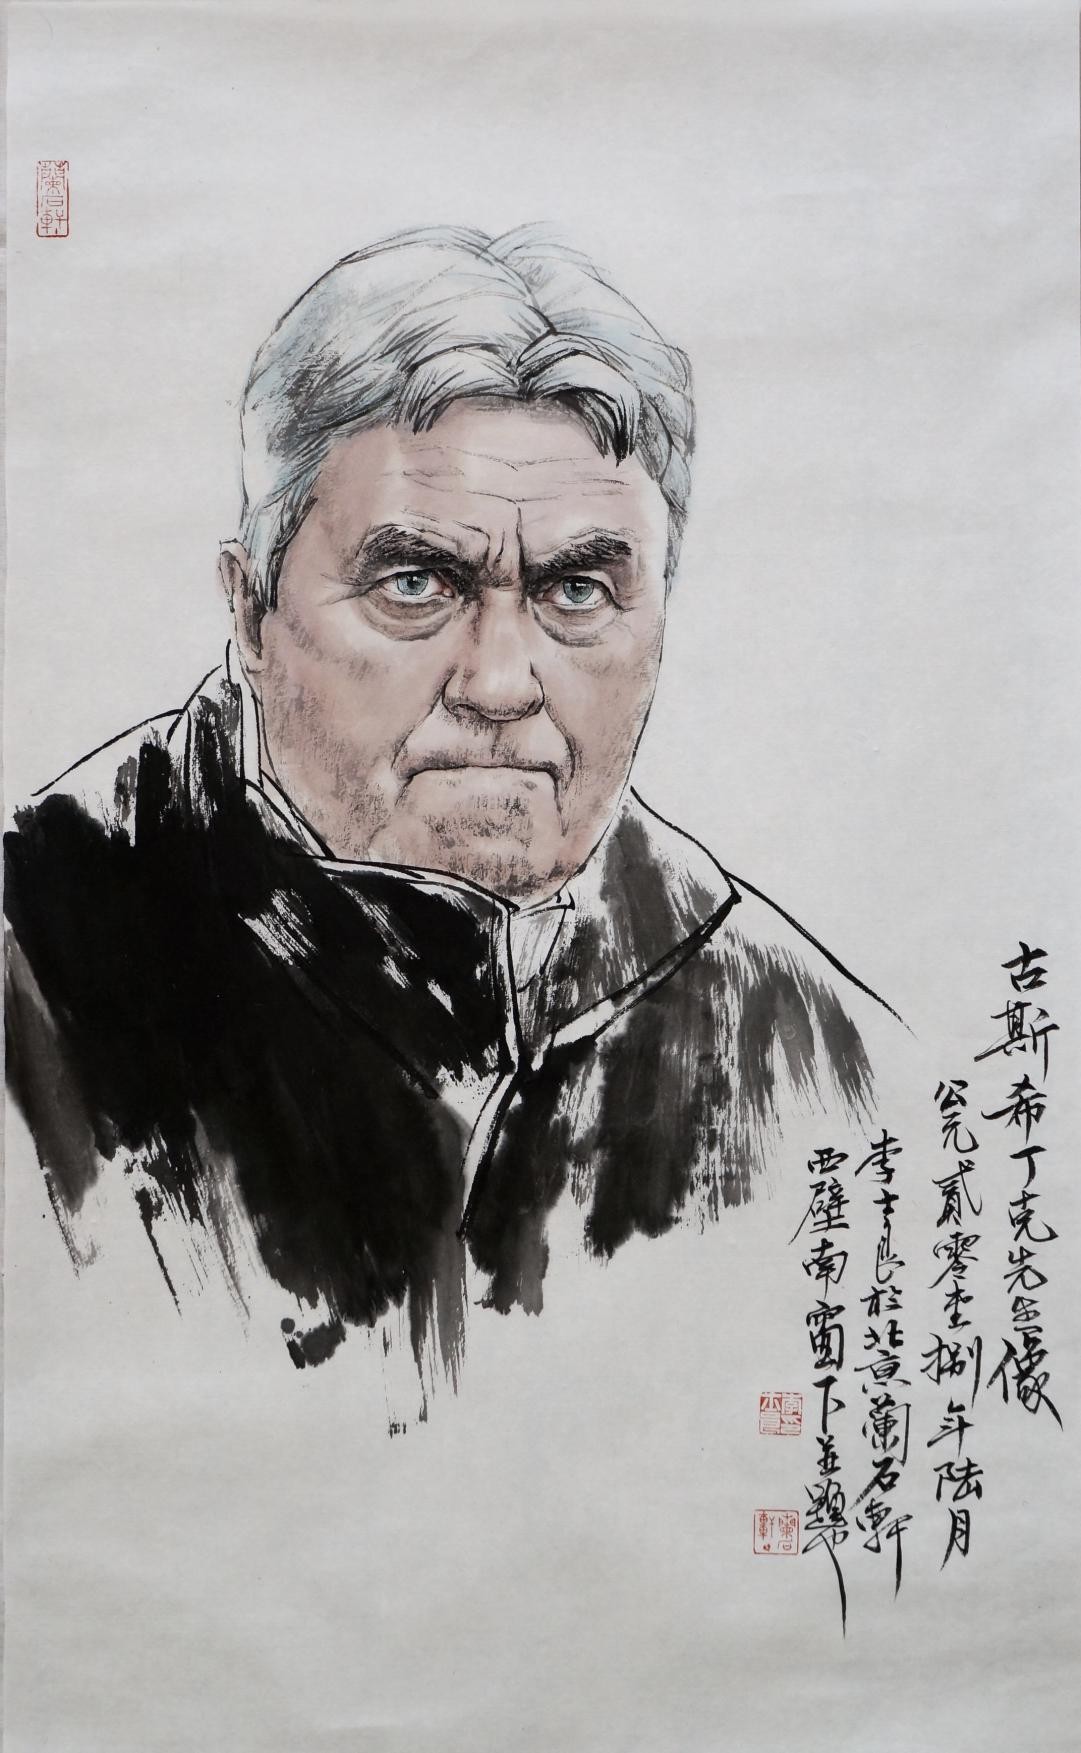 中国画家李士良水墨人物画作品走进双语国际期刊《中国与俄罗斯》(图3)